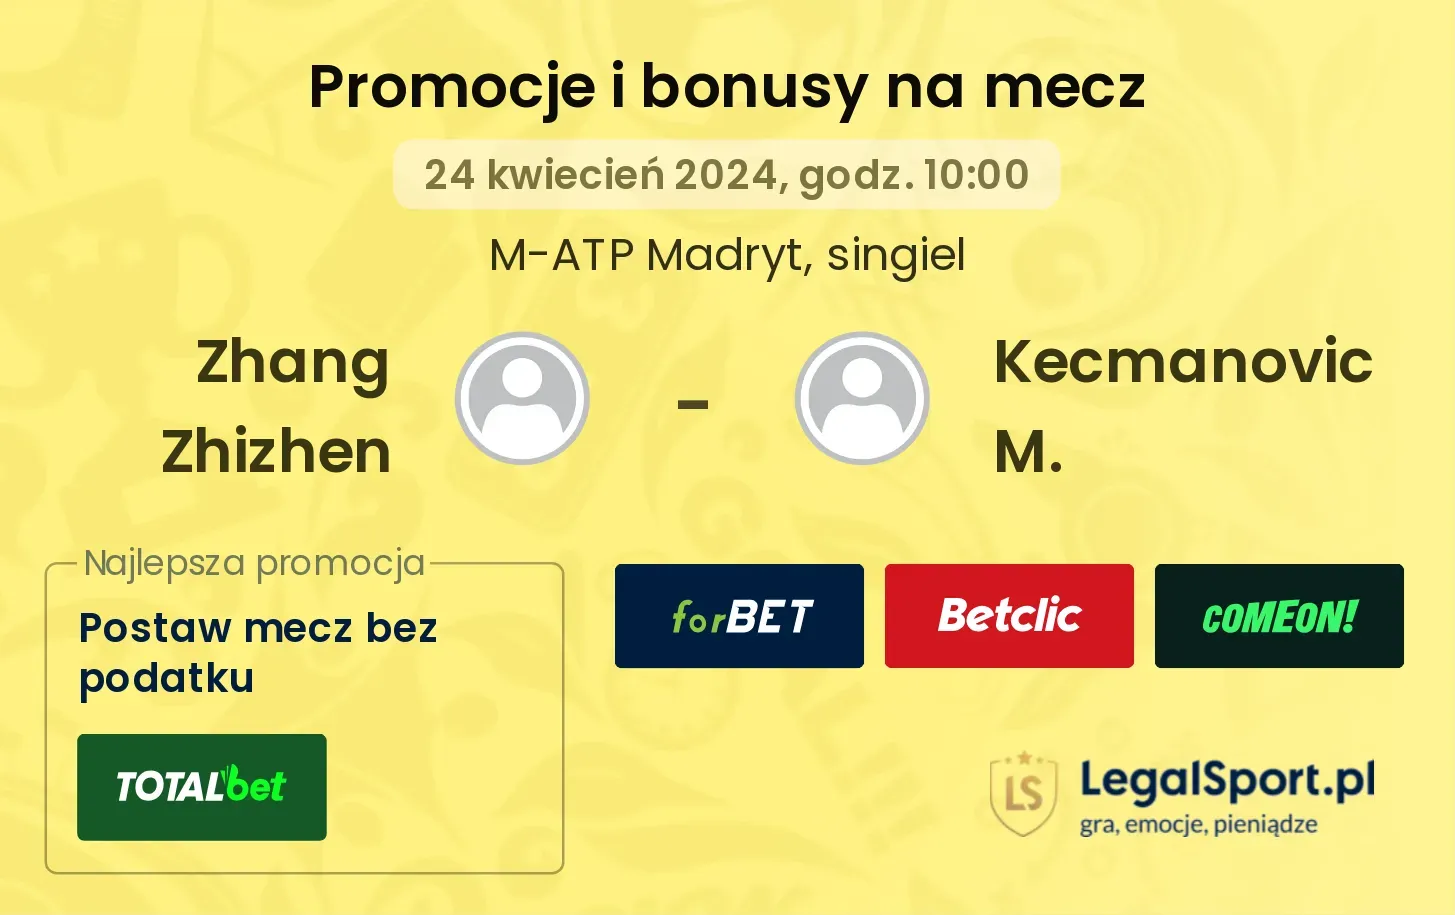 Zhang Zhizhen - Kecmanovic M. promocje bonusy na mecz